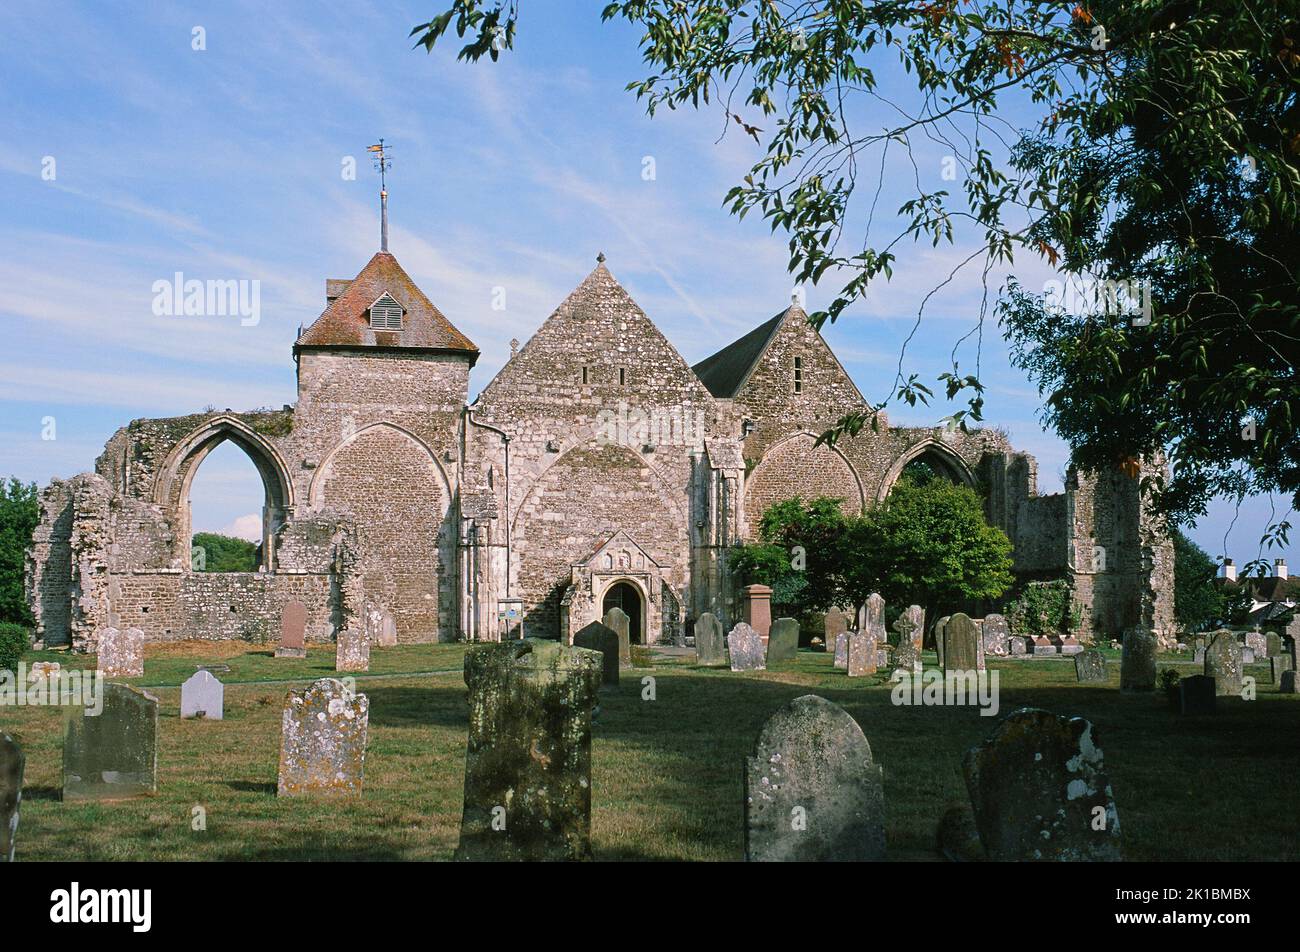 La histórica iglesia de Santo Tomás del Mártir en la ciudad de Winchelsea, East Sussex, sudeste de Inglaterra Foto de stock